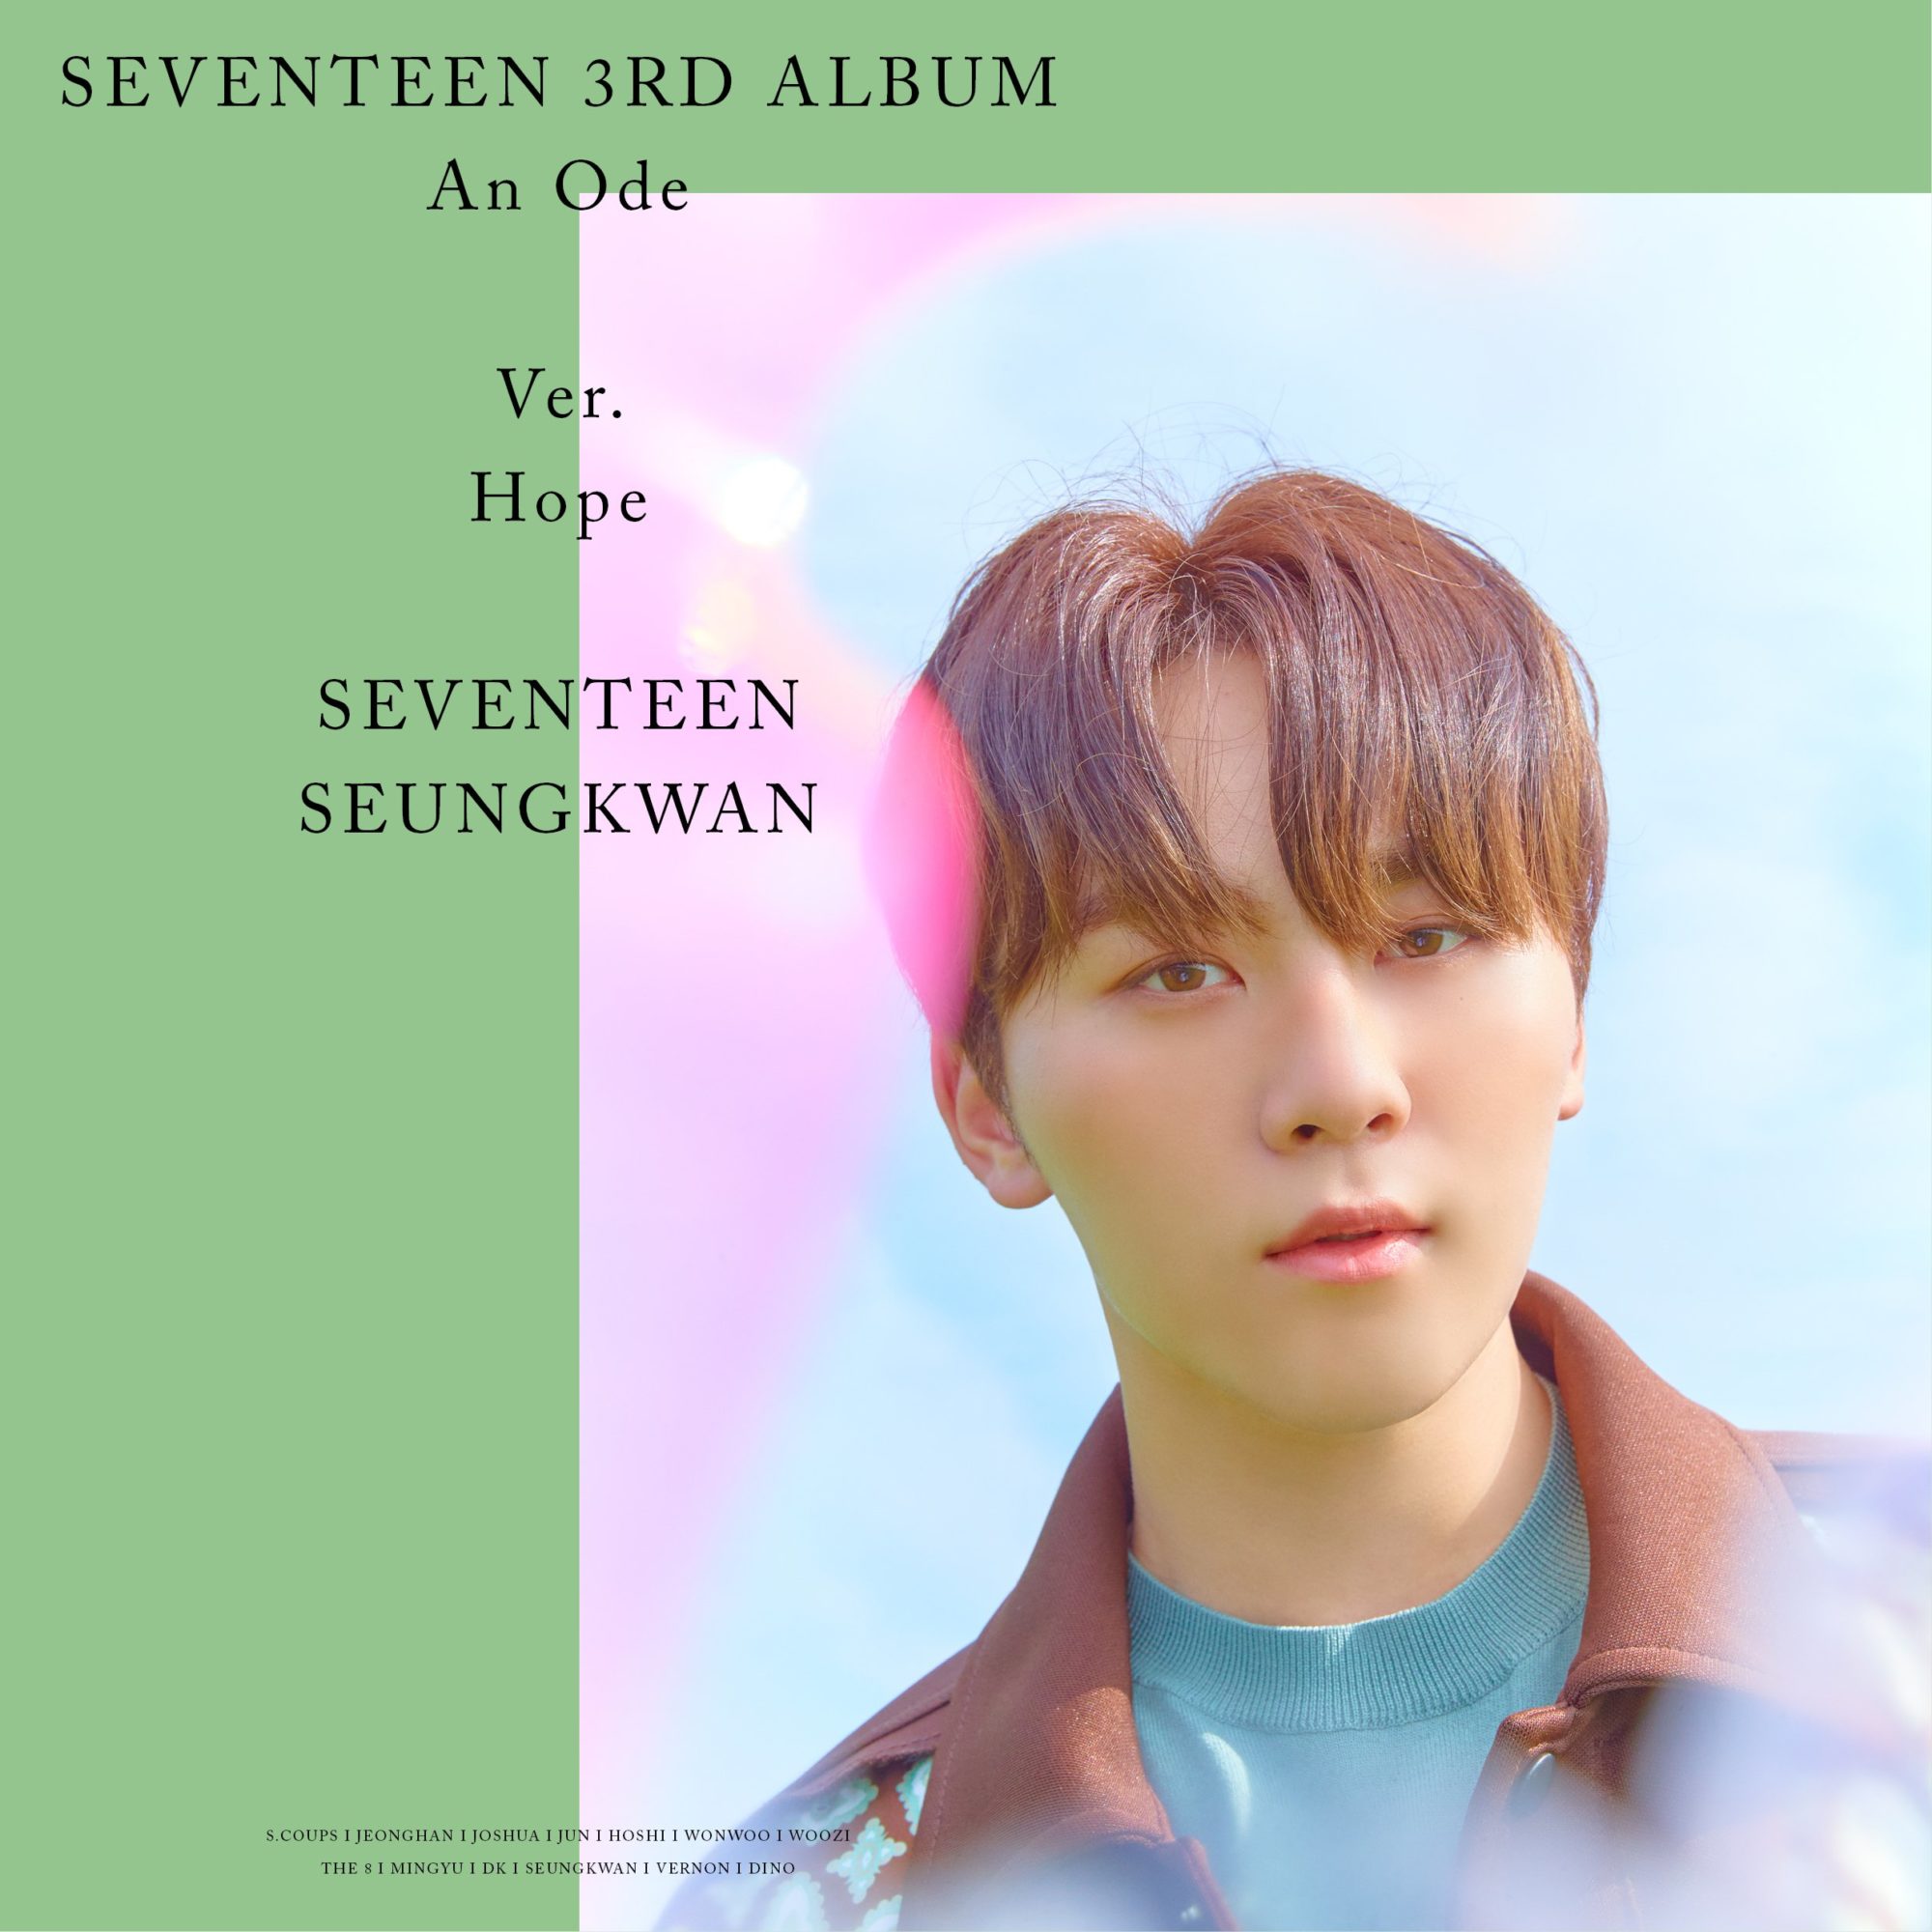 Seventeen An Ode Hope Ver. Seungkwan